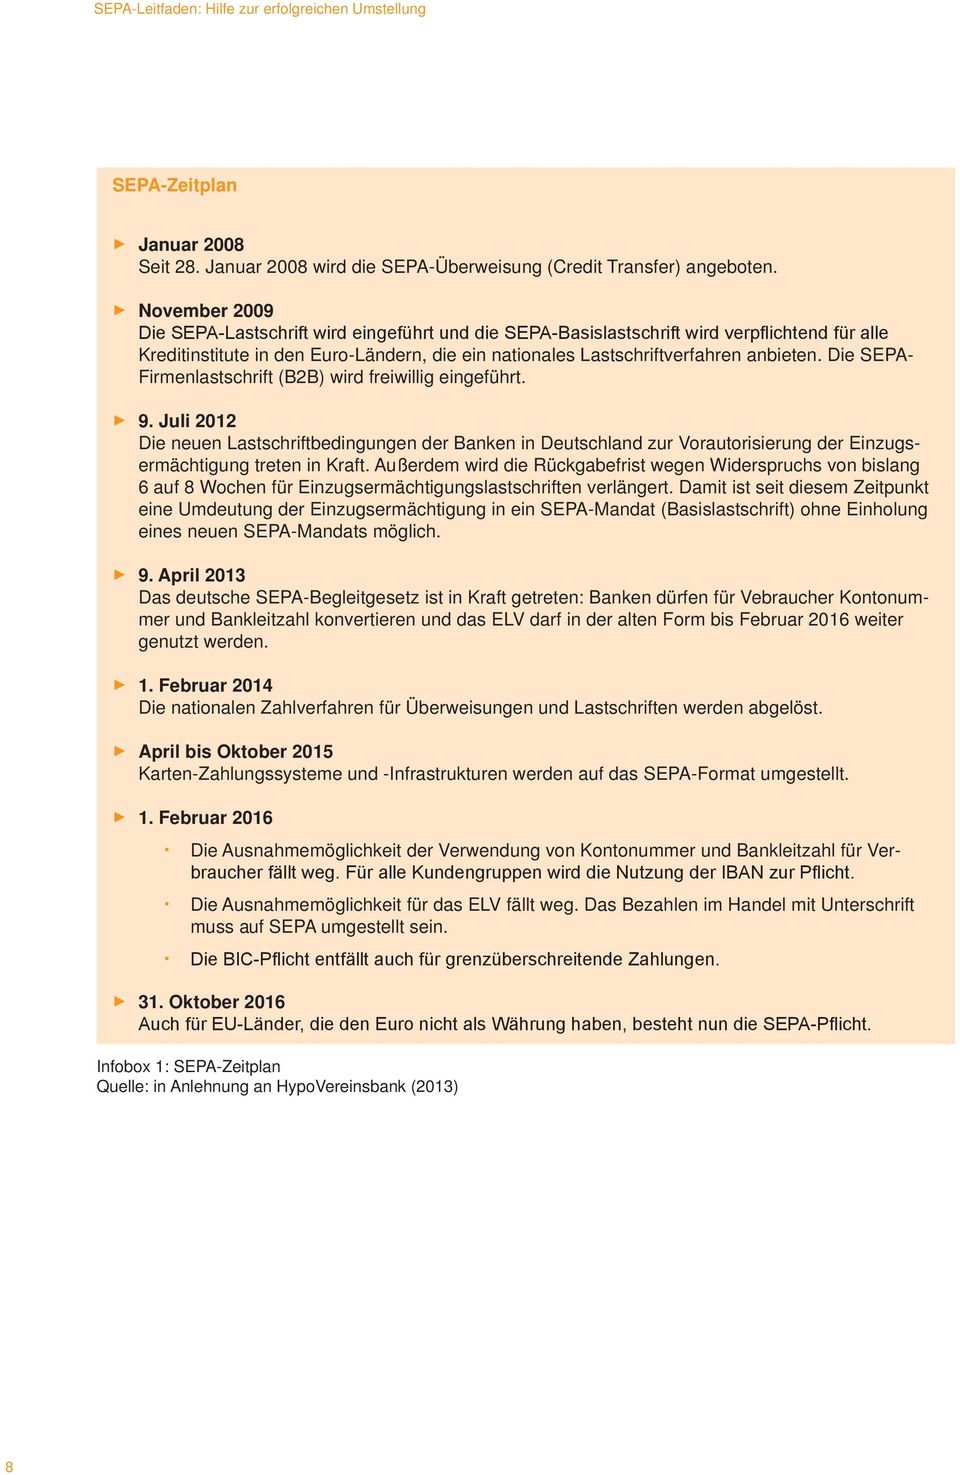 Die SEPA- Firmenlastschrift (B2B) wird freiwillig eingeführt. 9. Juli 2012 Die neuen Lastschriftbedingungen der Banken in Deutschland zur Vorautorisierung der Einzugsermächtigung treten in Kraft.